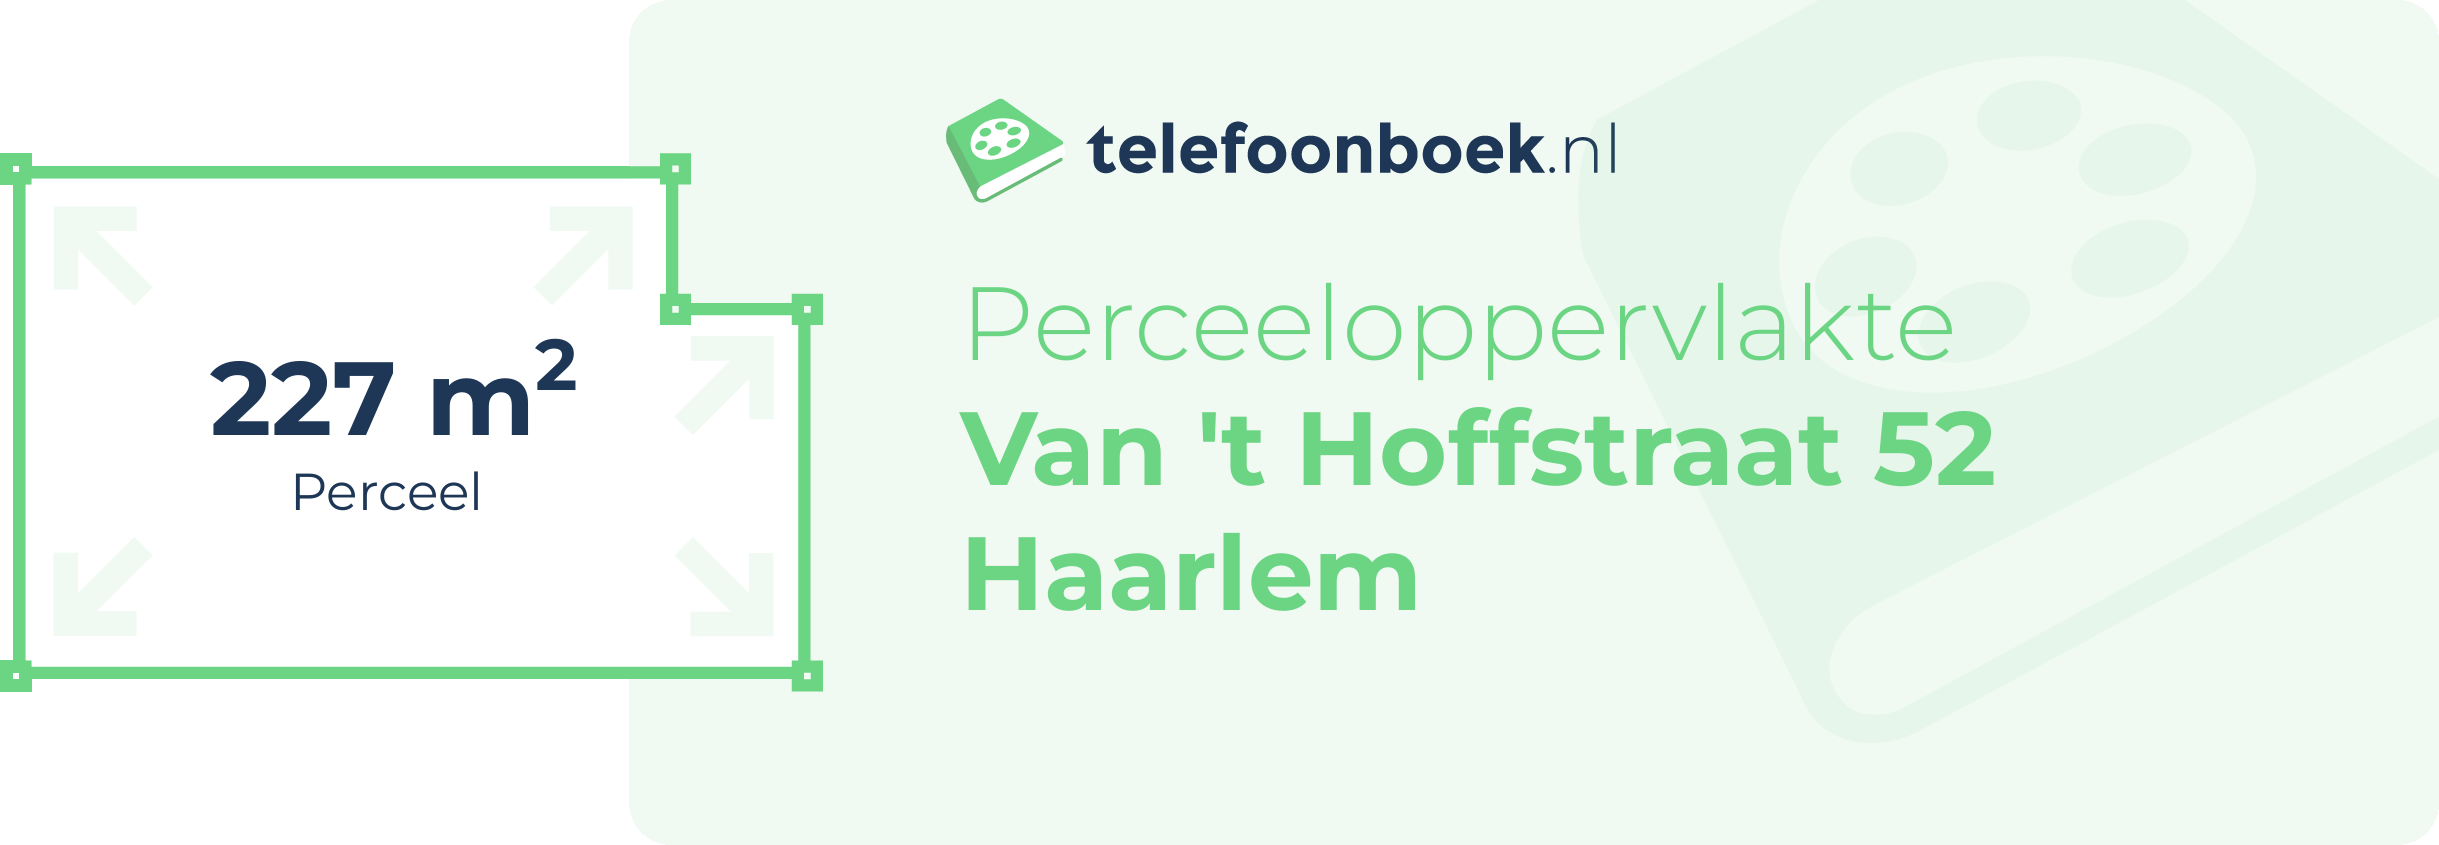 Perceeloppervlakte Van 't Hoffstraat 52 Haarlem